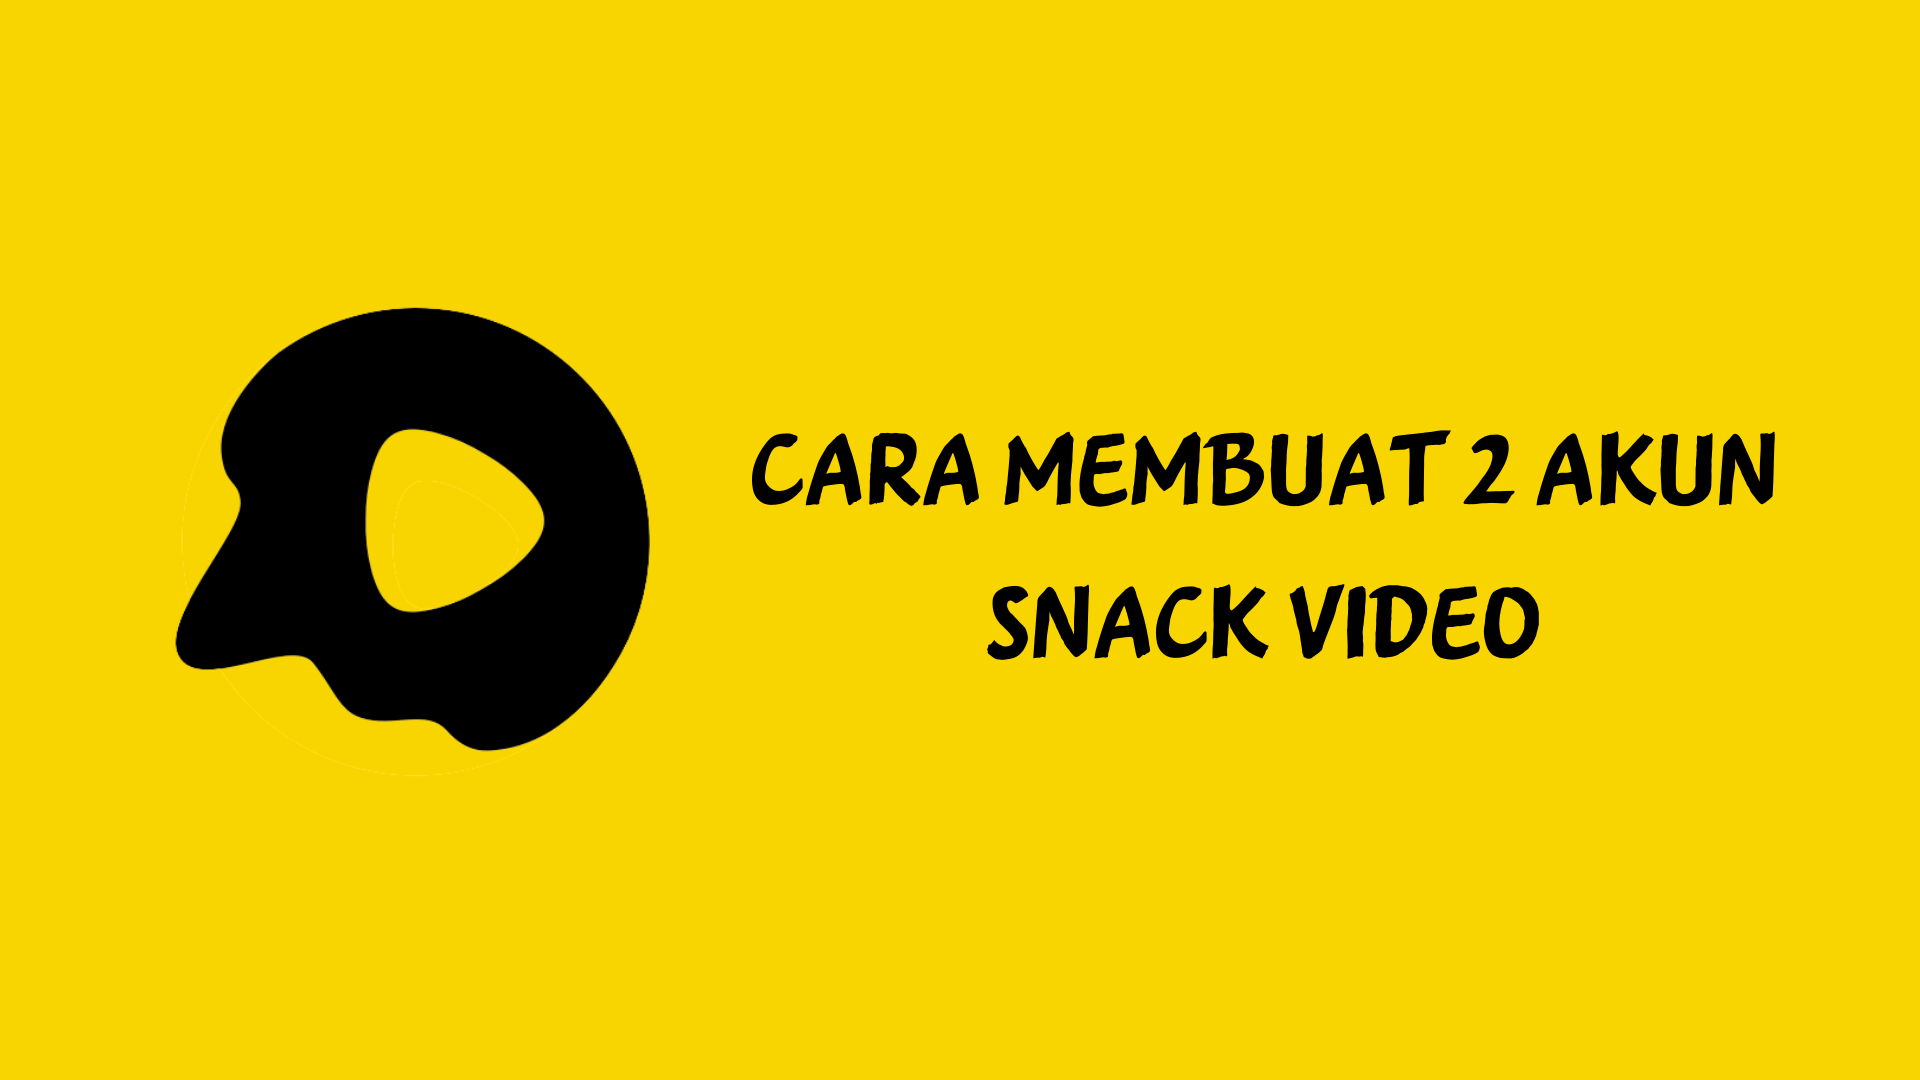 Cara Membuat 2 Akun Snack Video